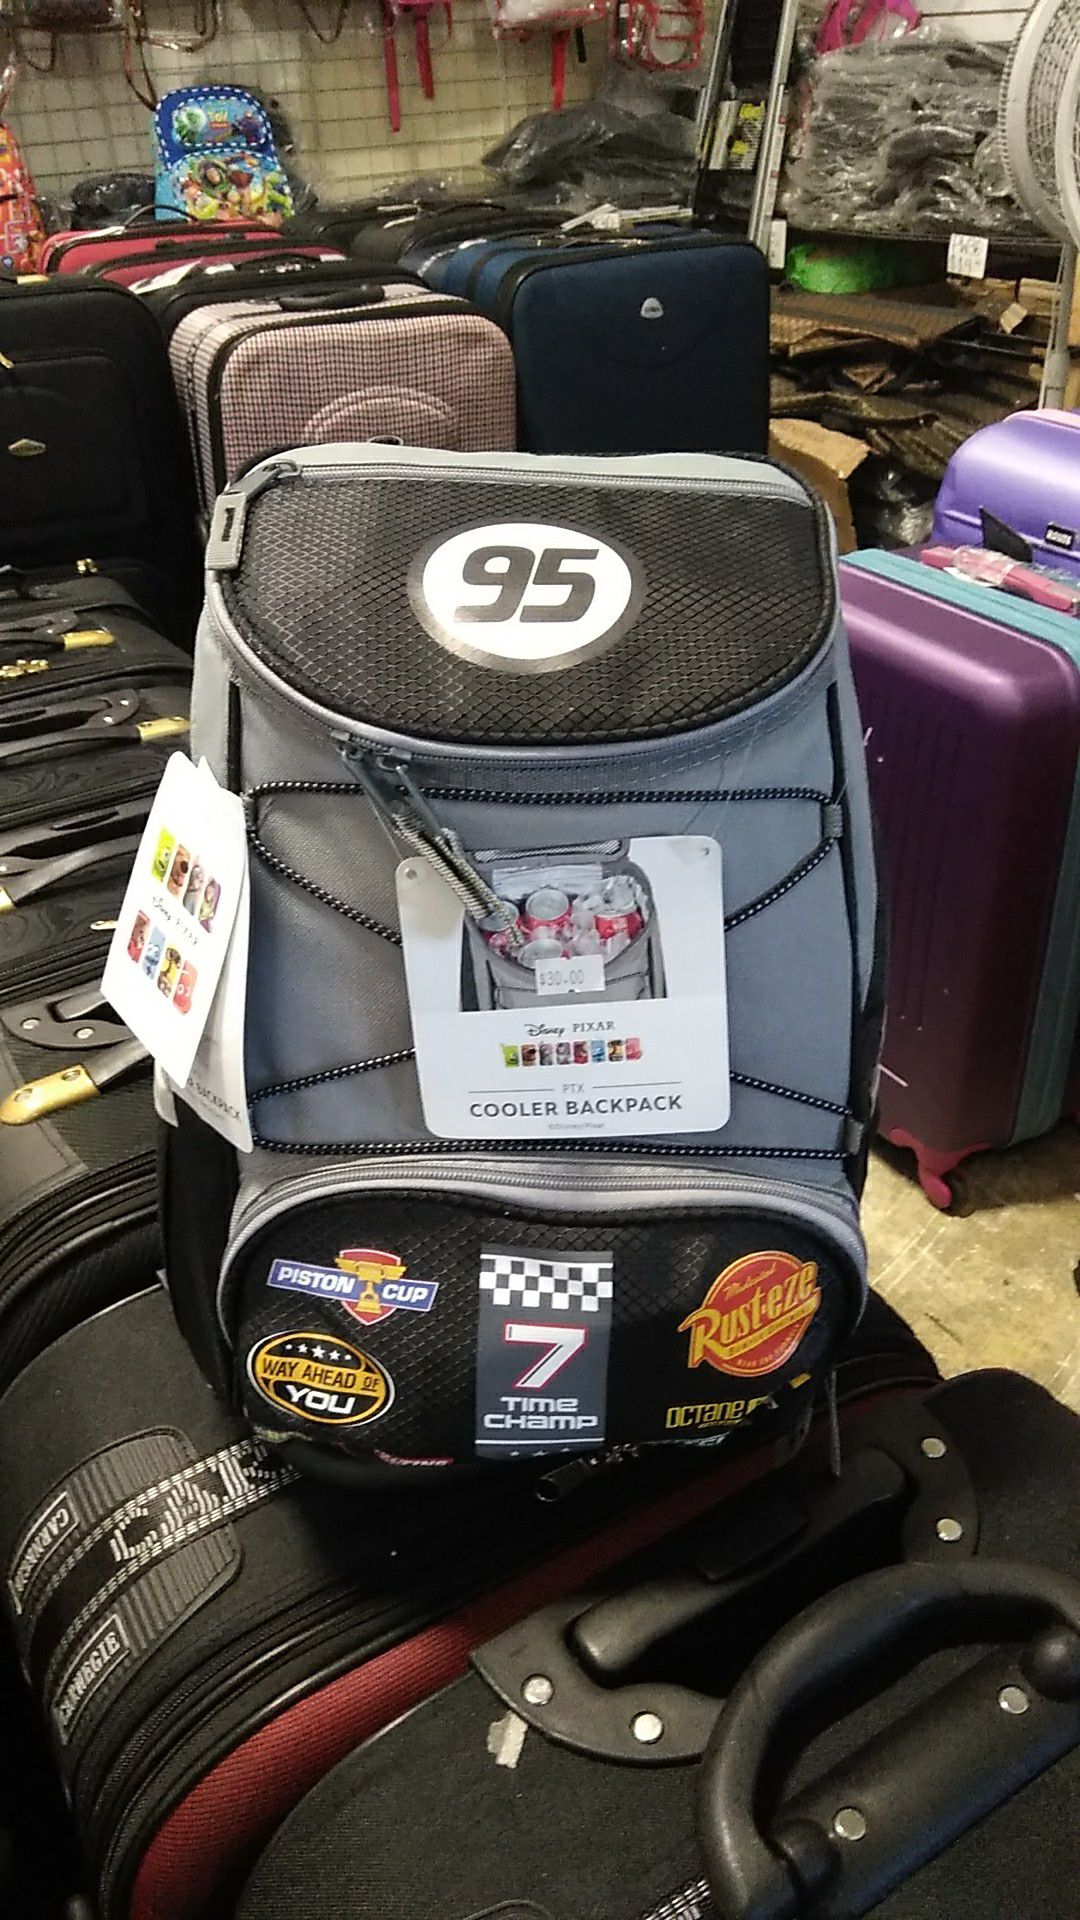 Disney Pixar Cooler Backpack